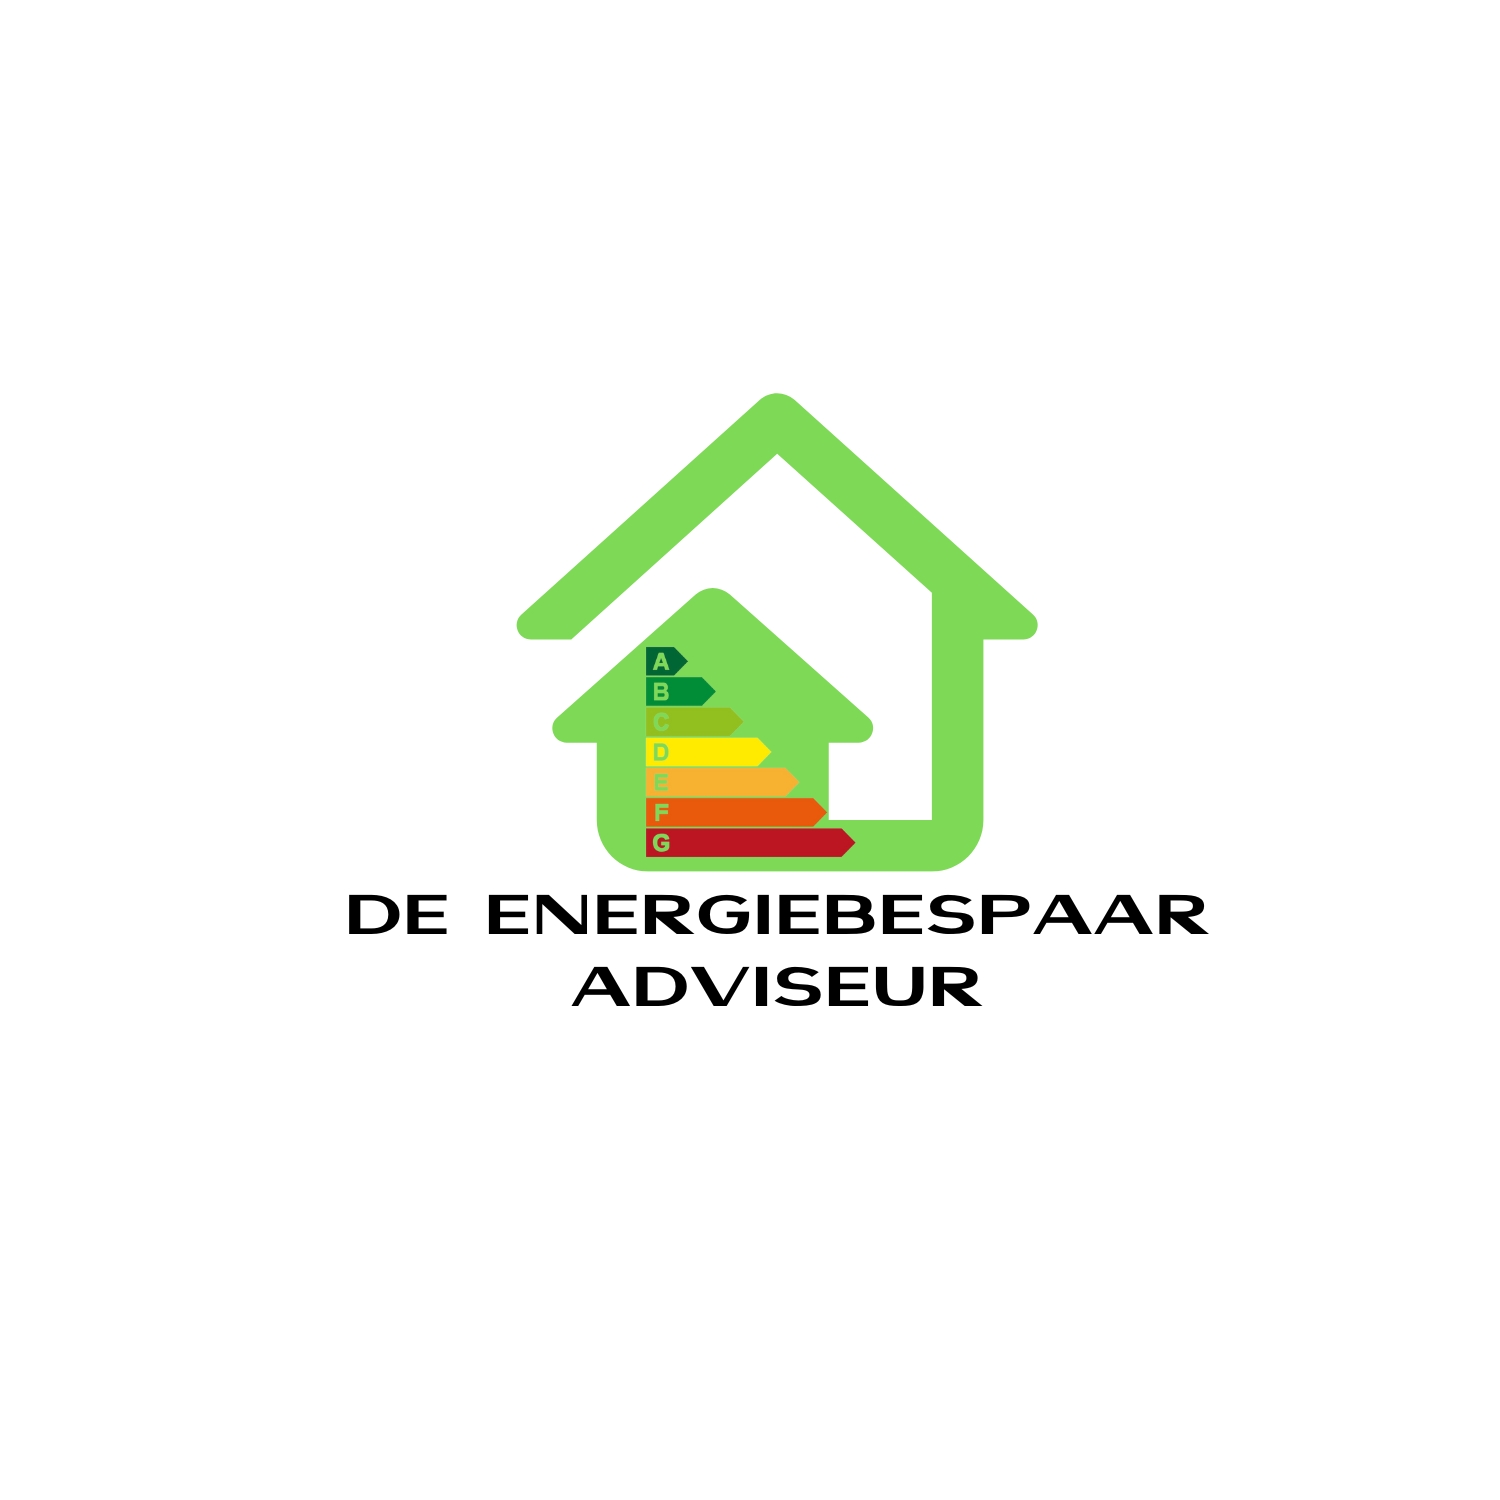 De Energiebespaaradviseur logo